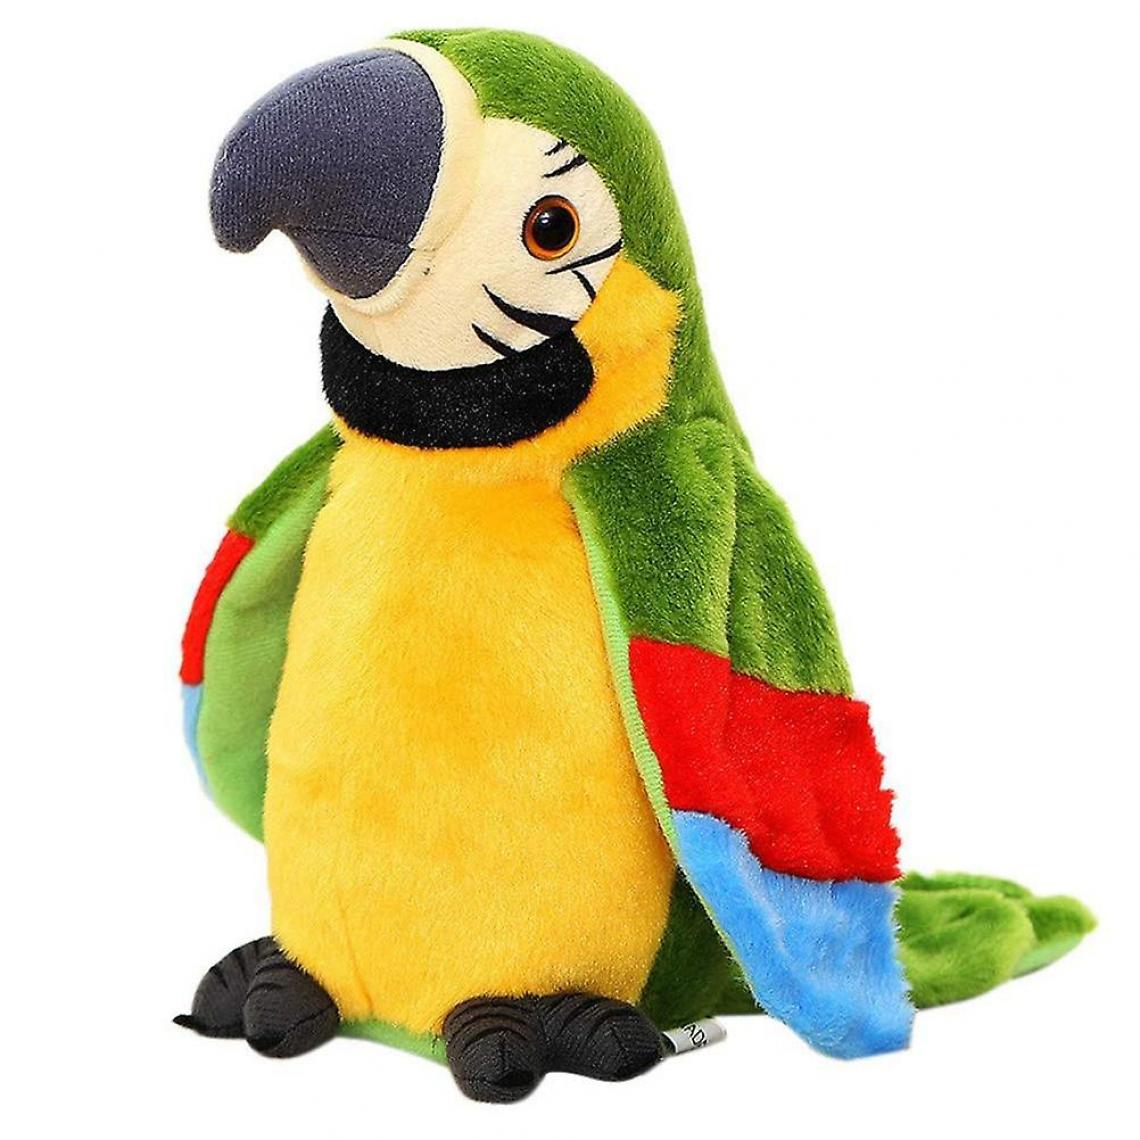 Universal - Conversation électrique perroquet peluche peluche oiseau jouet (vert) - Animaux